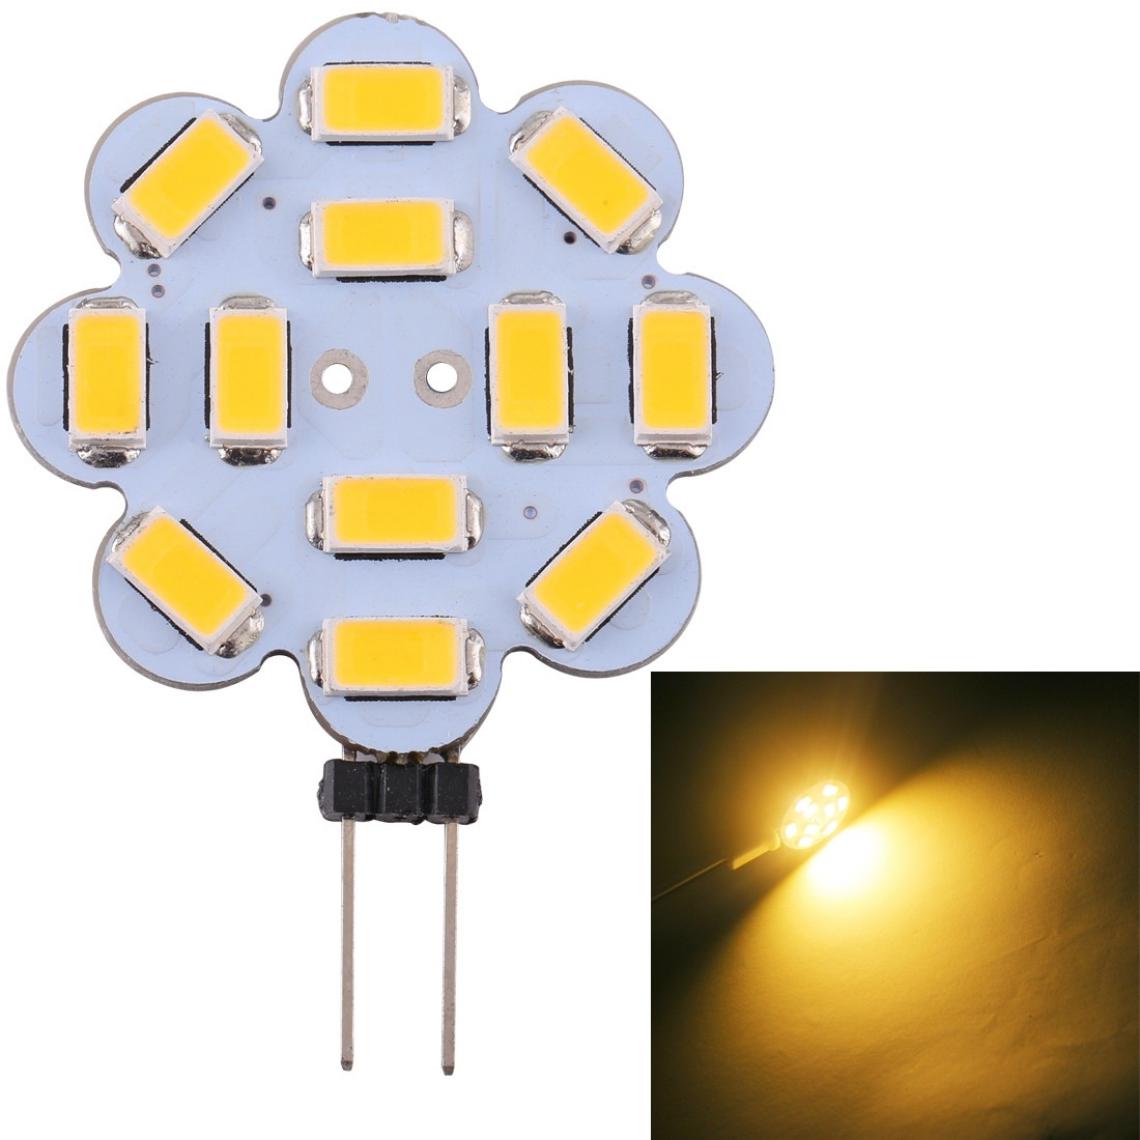 Wewoo - G4 12 LED SMD 5730 240LM 2800-3200K Forme de fleur de prunier Gradation en continu Ampoule à économie d'énergie à base de broche lumineuseDC 12V blanc chaud - Ampoules LED